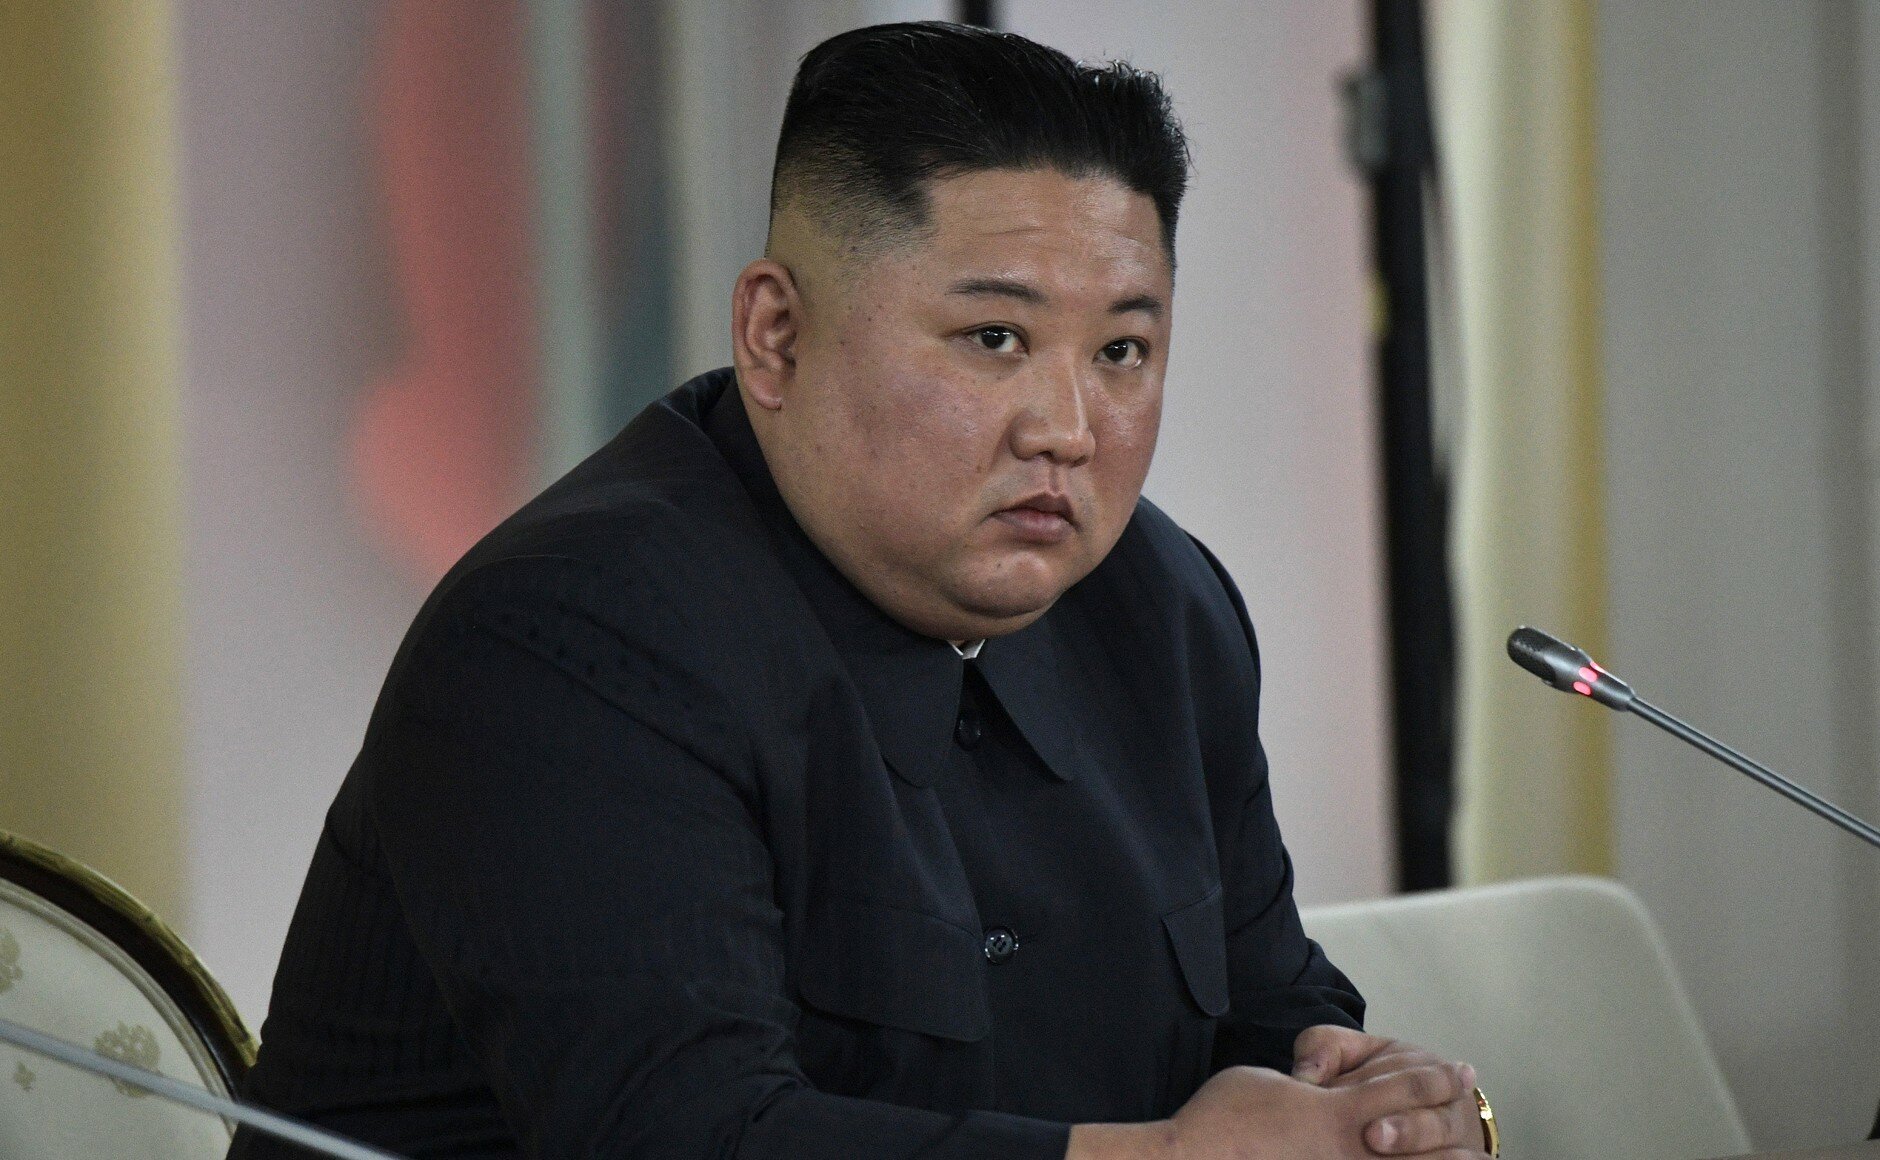 Daily Mail: Ким Чен Ын находится в "вегетативном состоянии" после операции на сердце